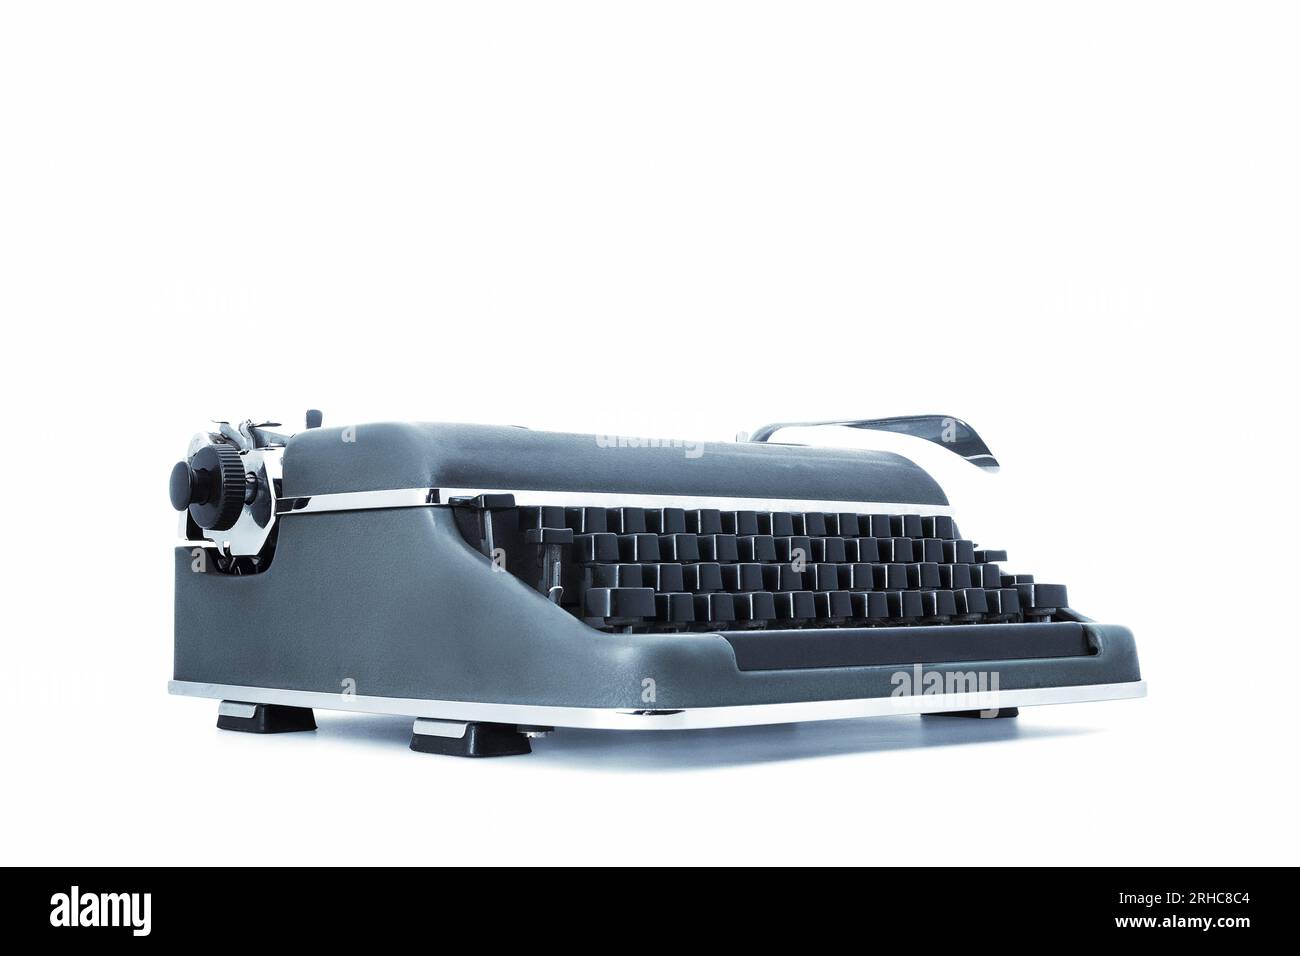 Alte mechanische Schreibmaschine im Vintage-Stil aus Metall, mit schwarzen Tasten und einem speziellen Hebel für den Wagenrücklauf. Auf einem weißen Hintergrund, angezeigt von Stockfoto